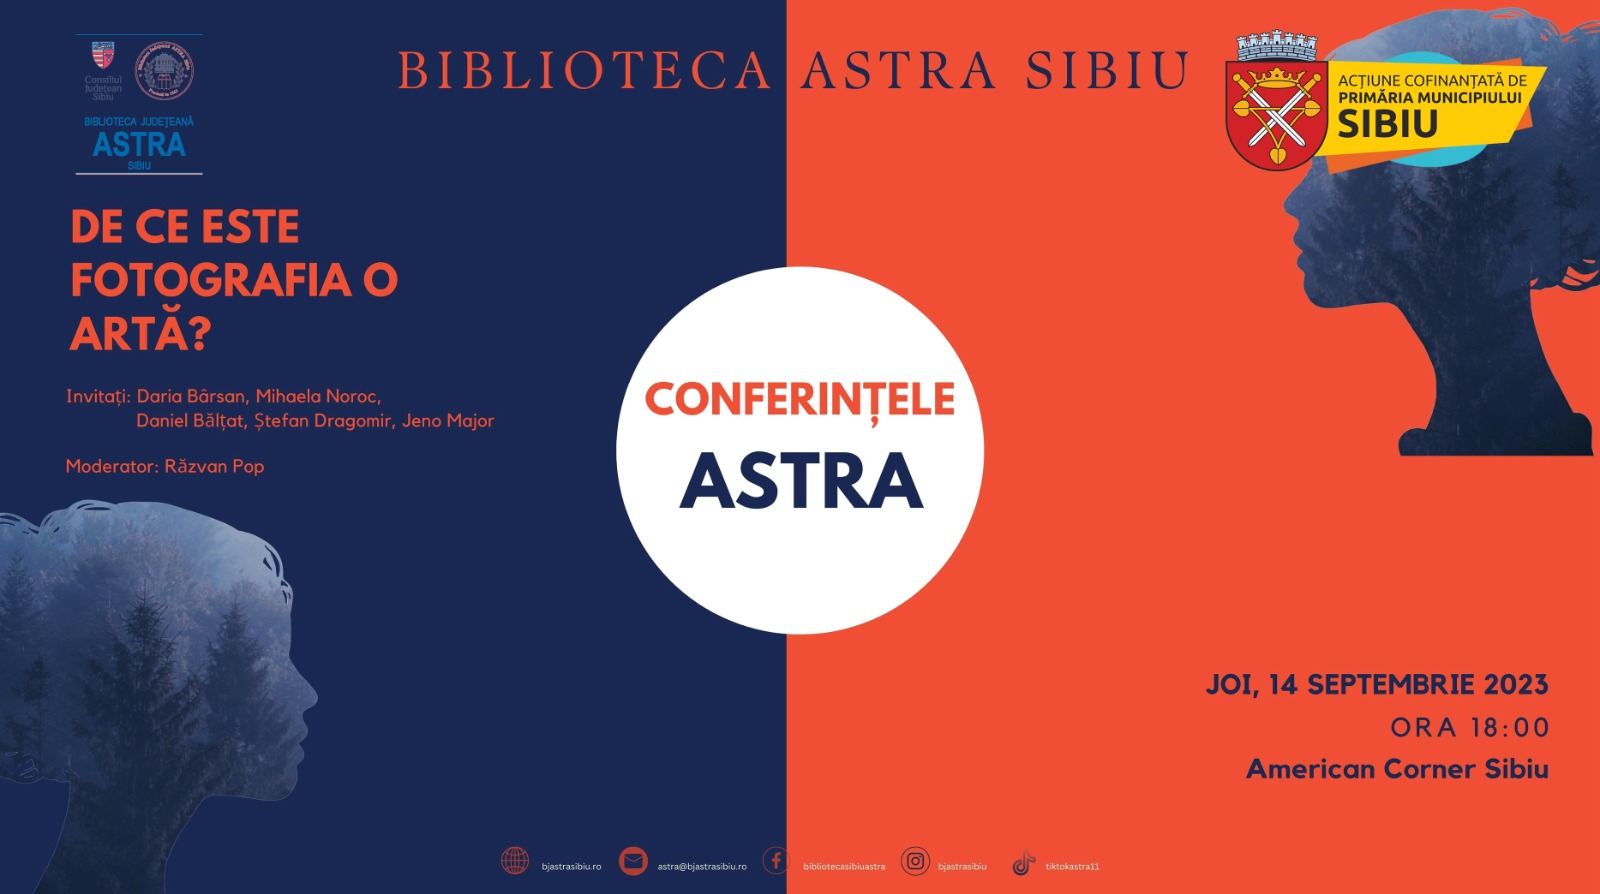 Conferințele ASTRA: Zece evenimente cu invitați de excepție, specialiști în diferite domenii, în dialoguri de actualitate